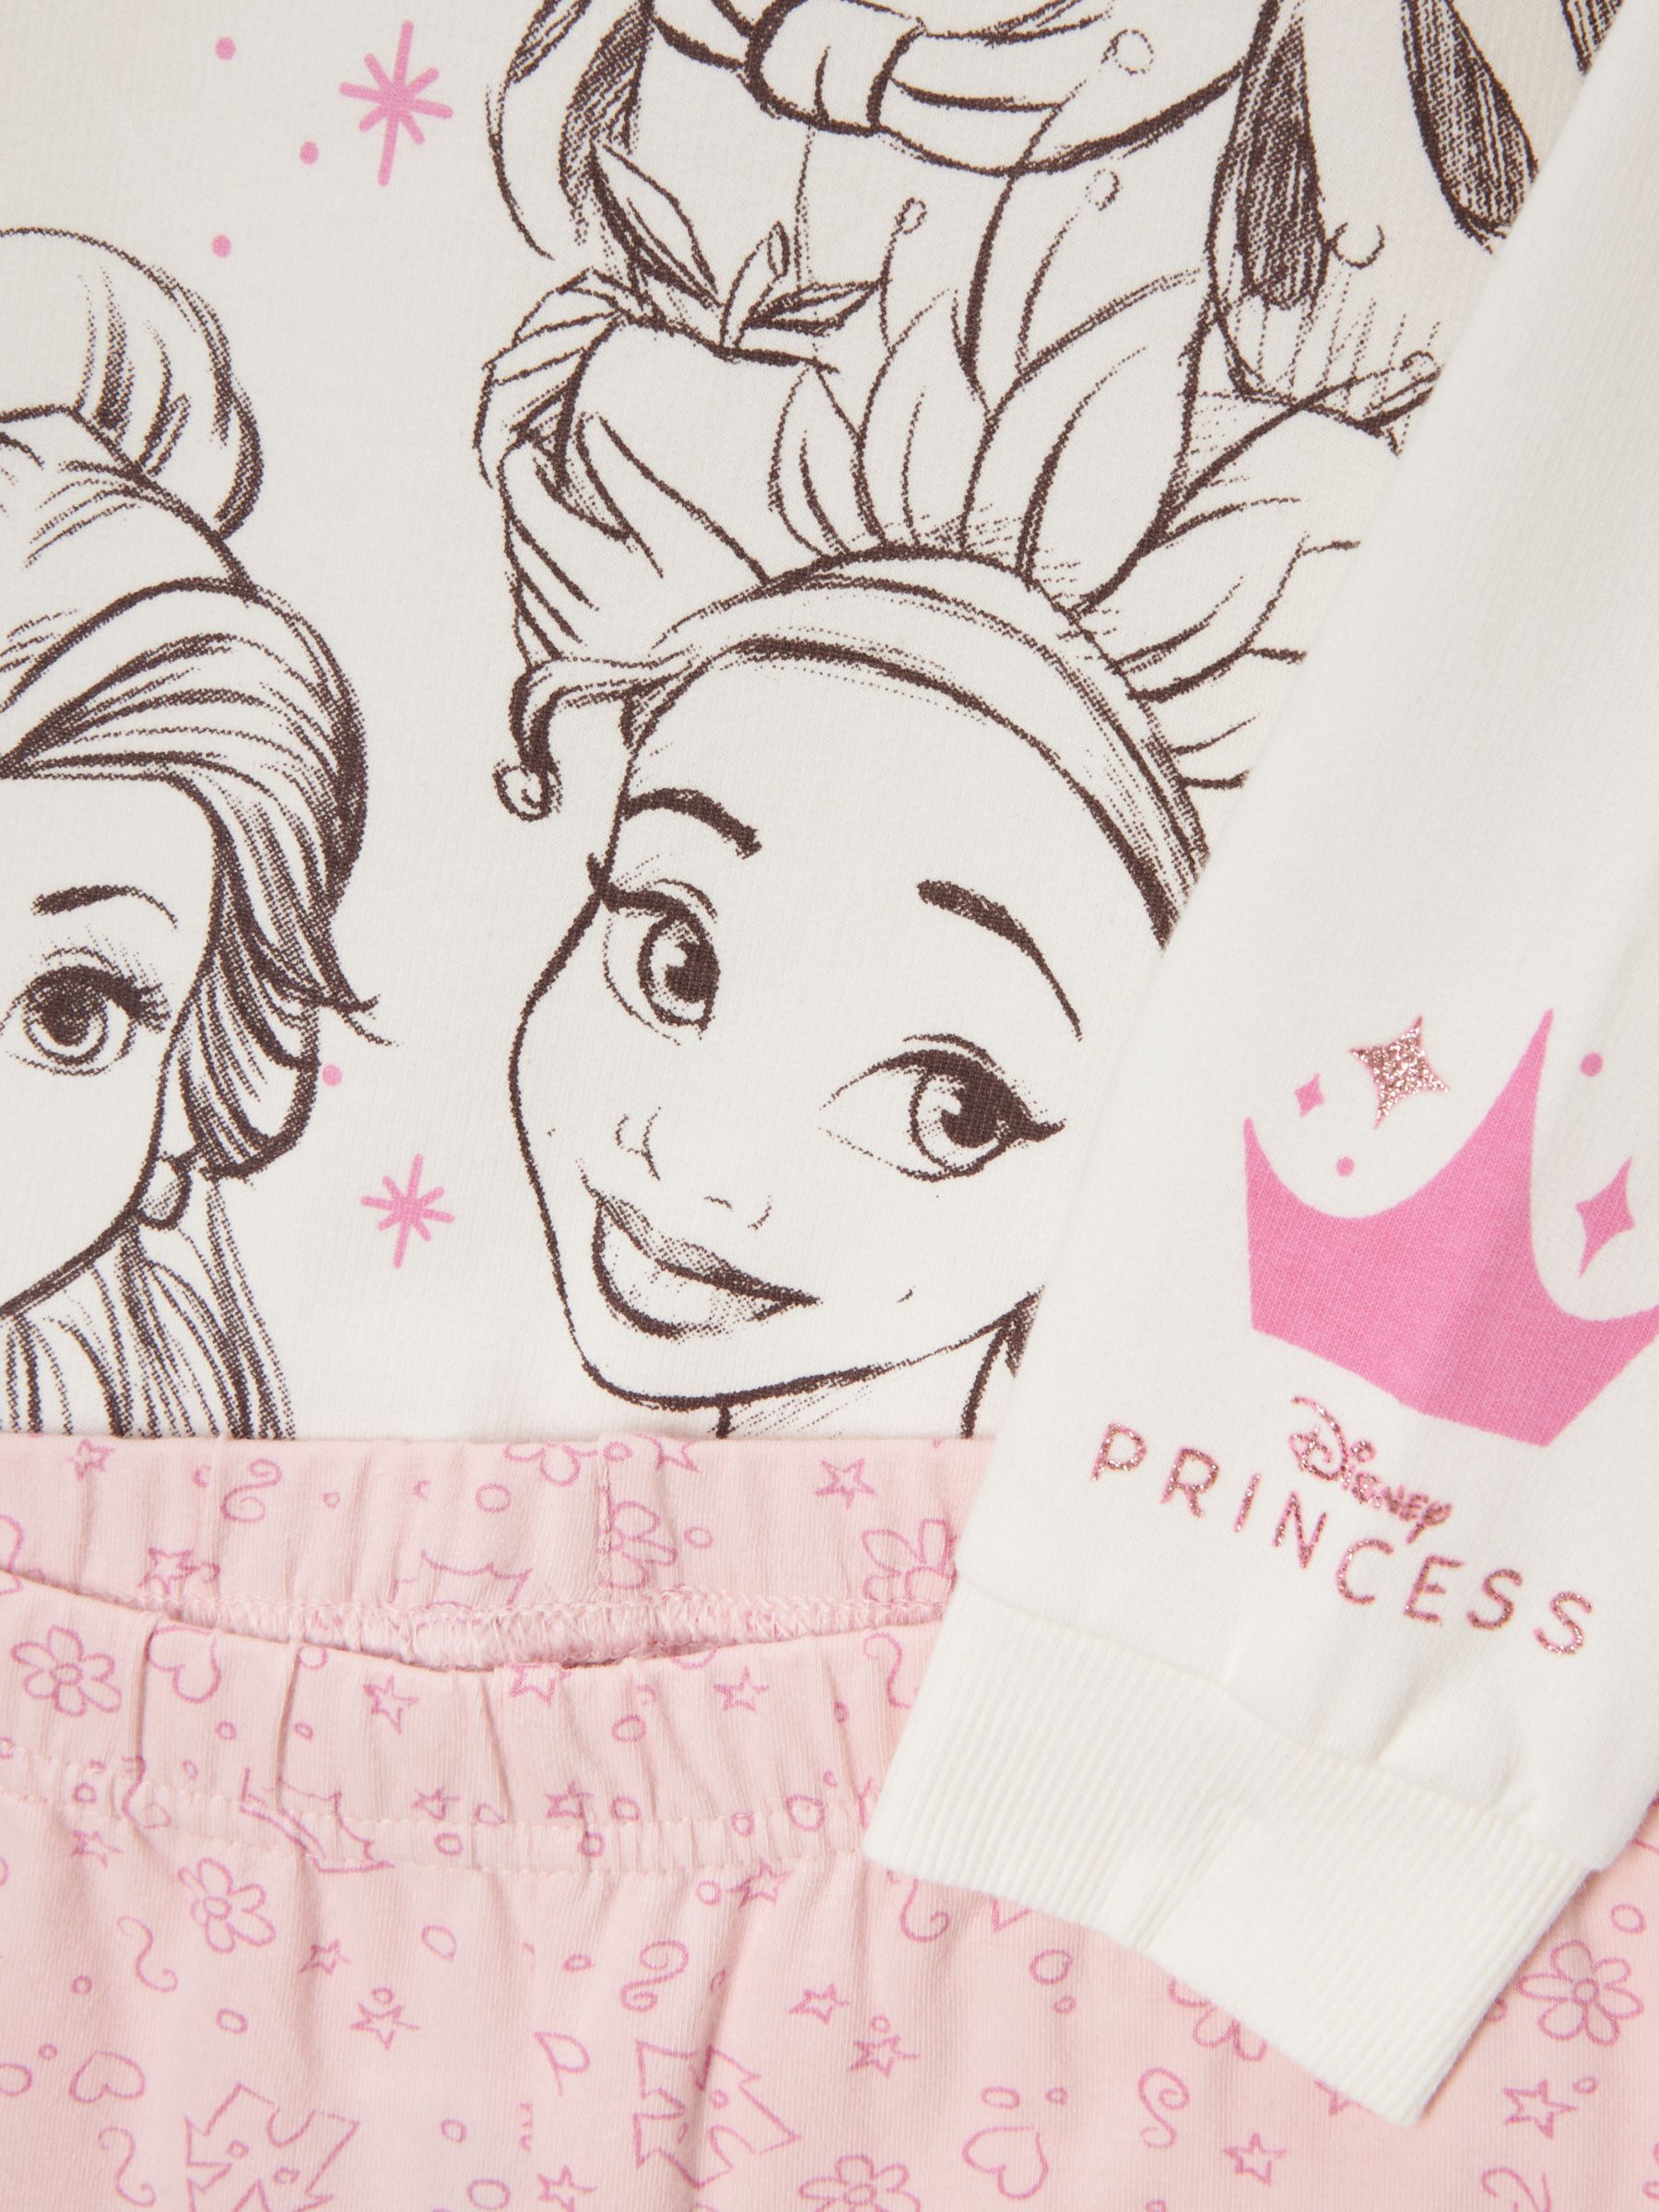 Buy Brand Threads Kids' Disney Princess Top & Leggings Set, Pink/White Online at johnlewis.com